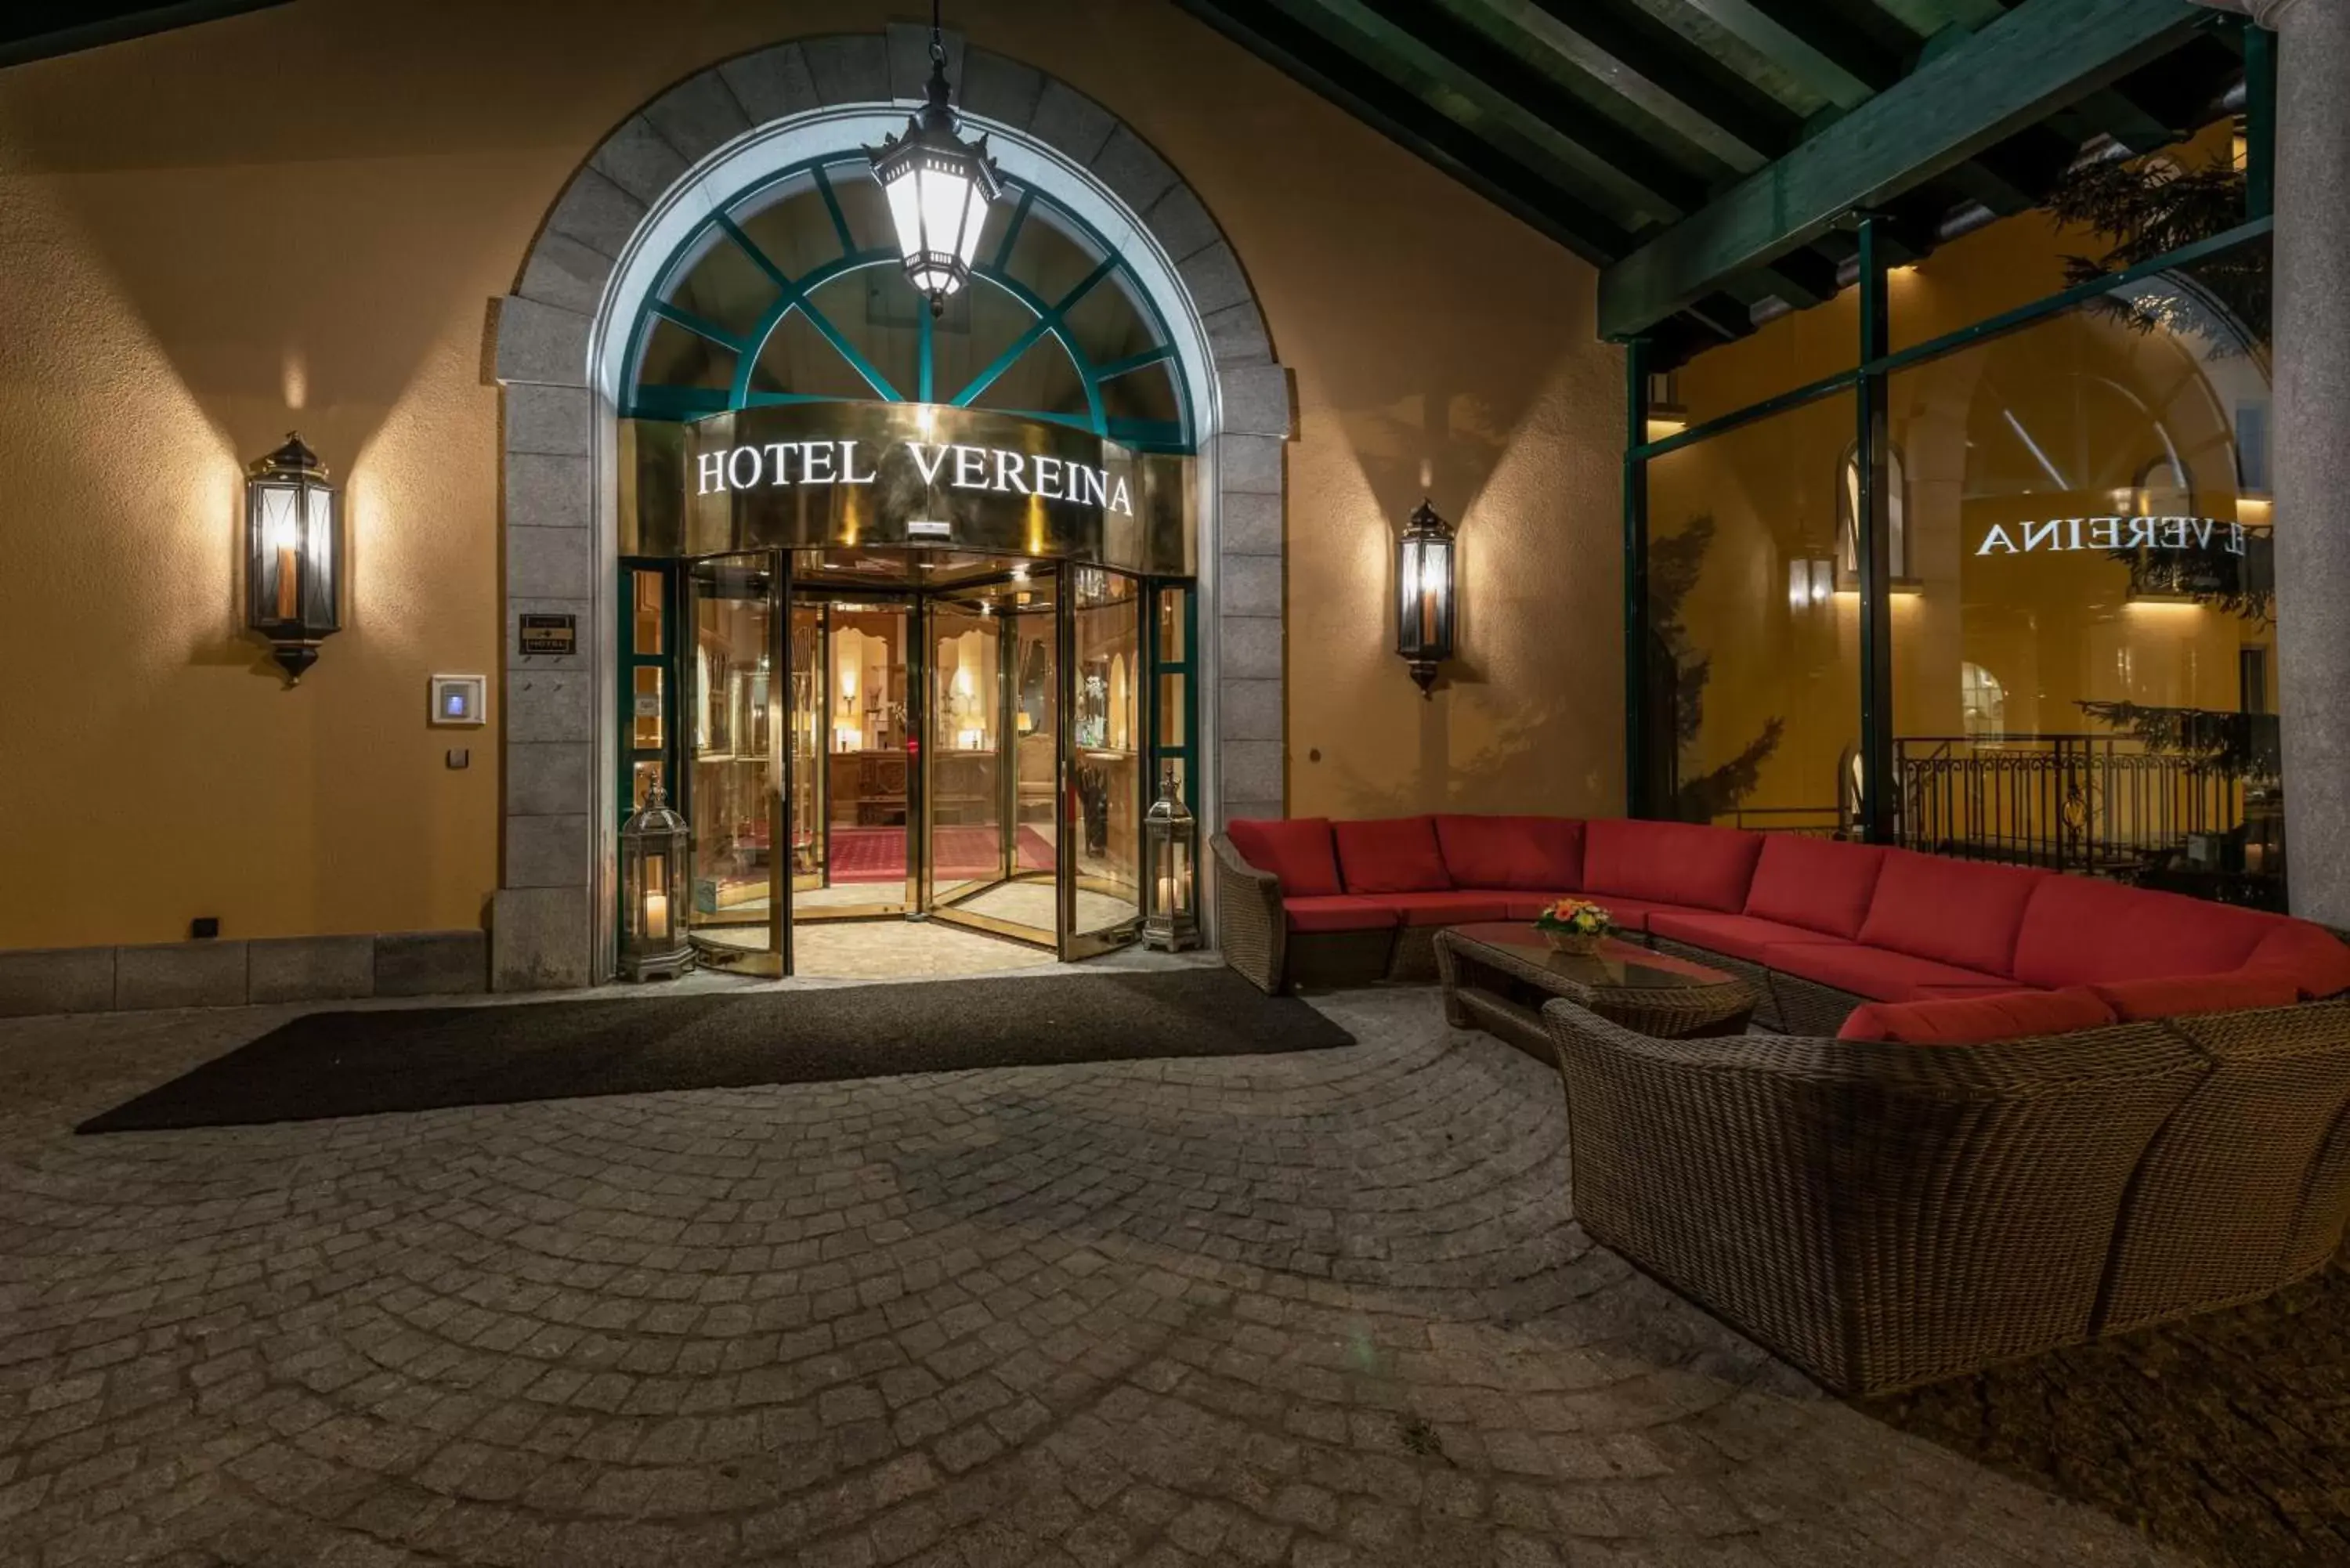 Facade/entrance in Hotel Vereina